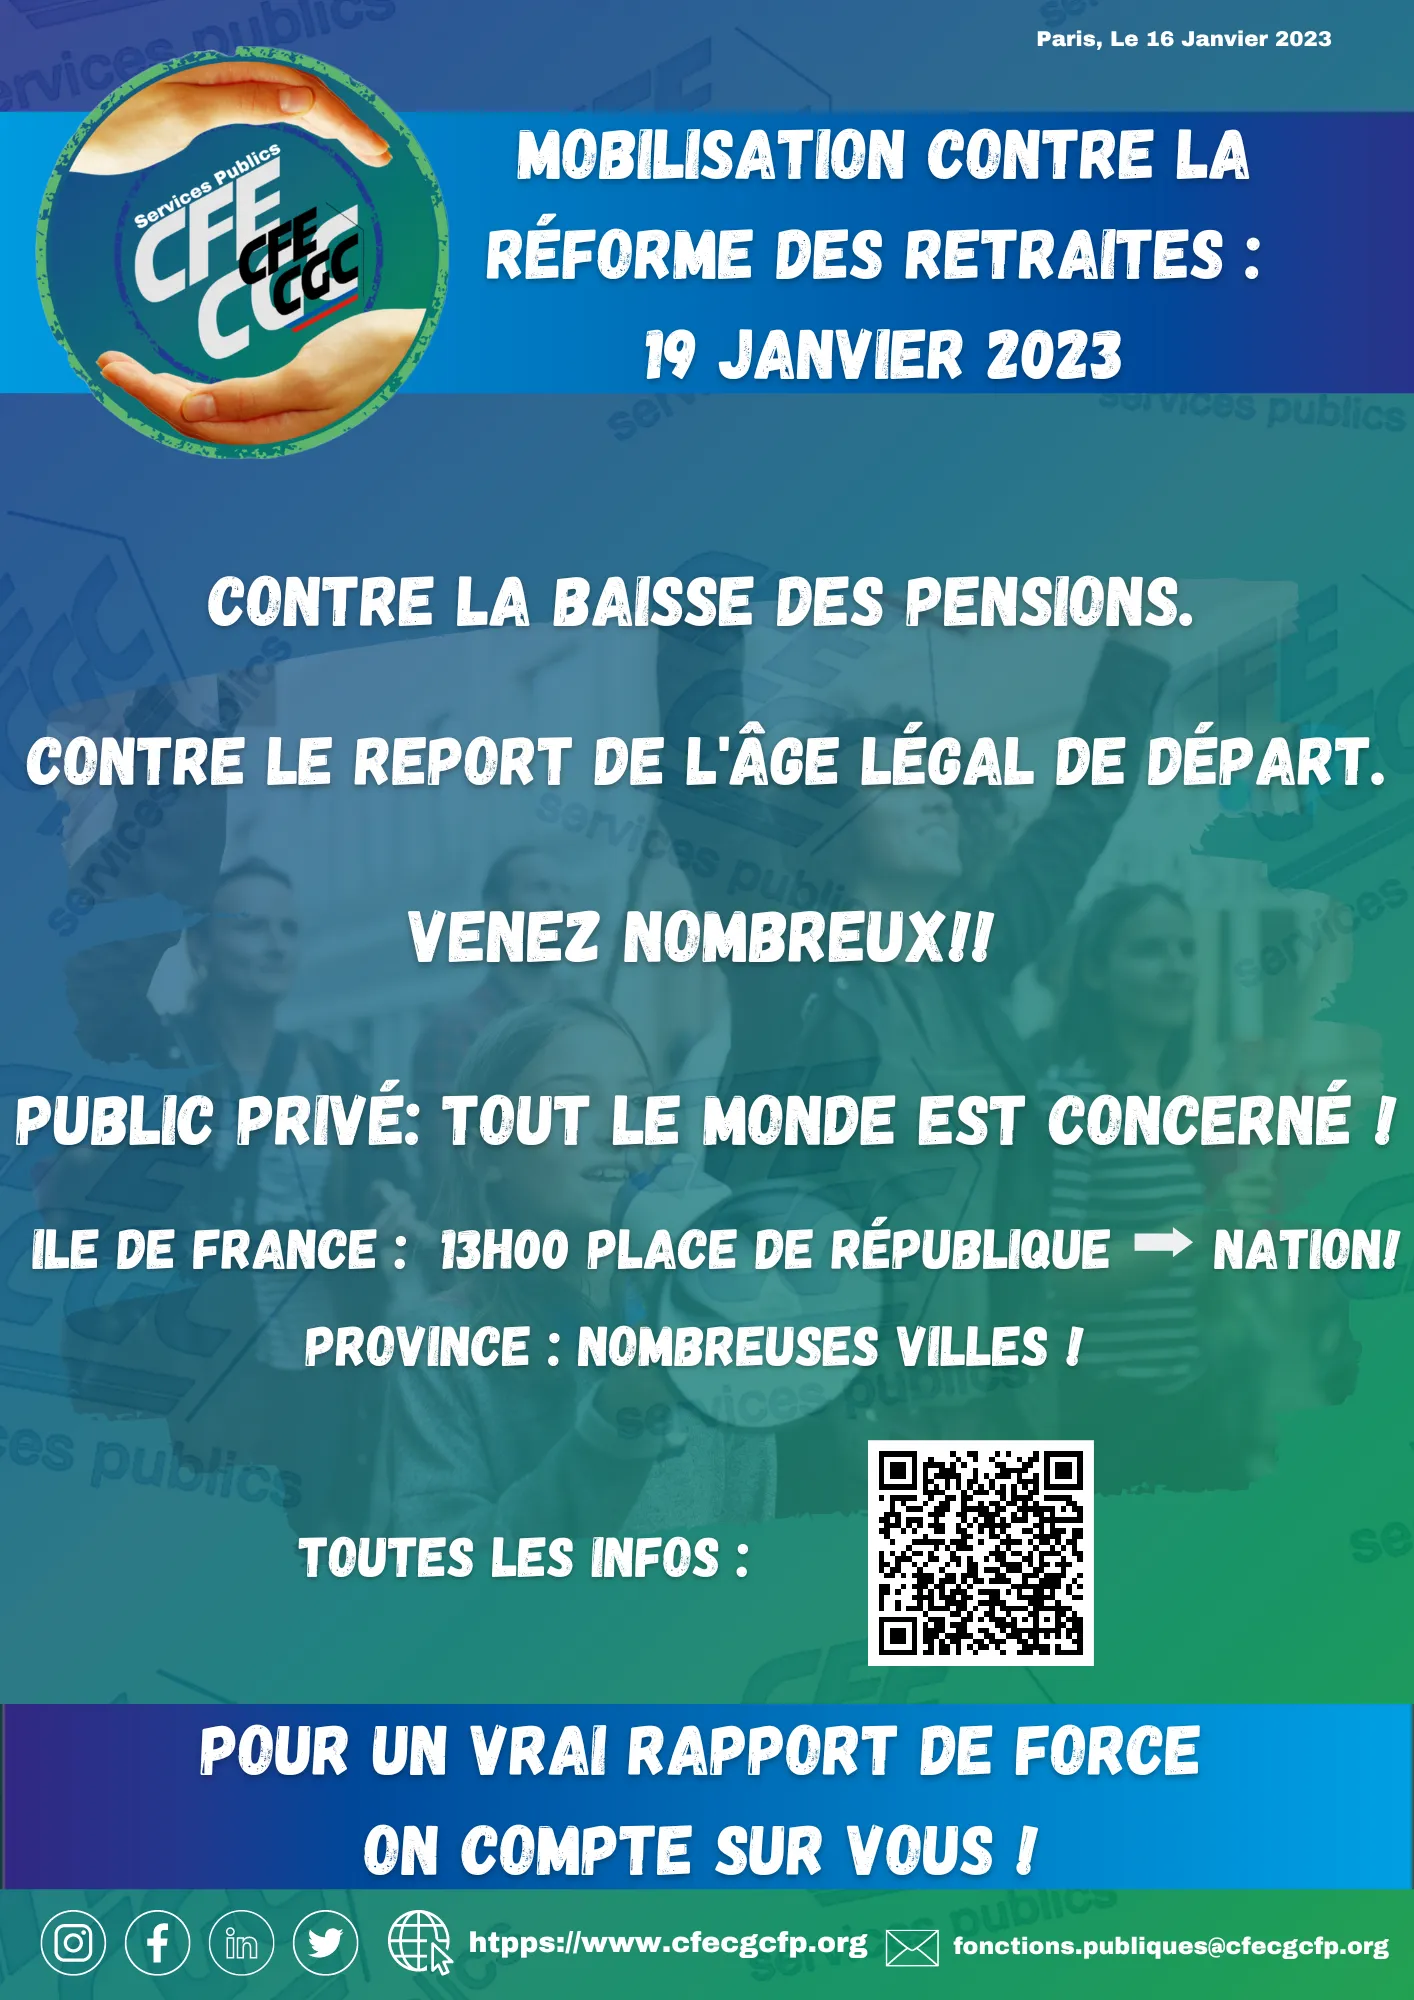 Le 19 janvier 2023: Mobilisation contre la réforme des retraites !